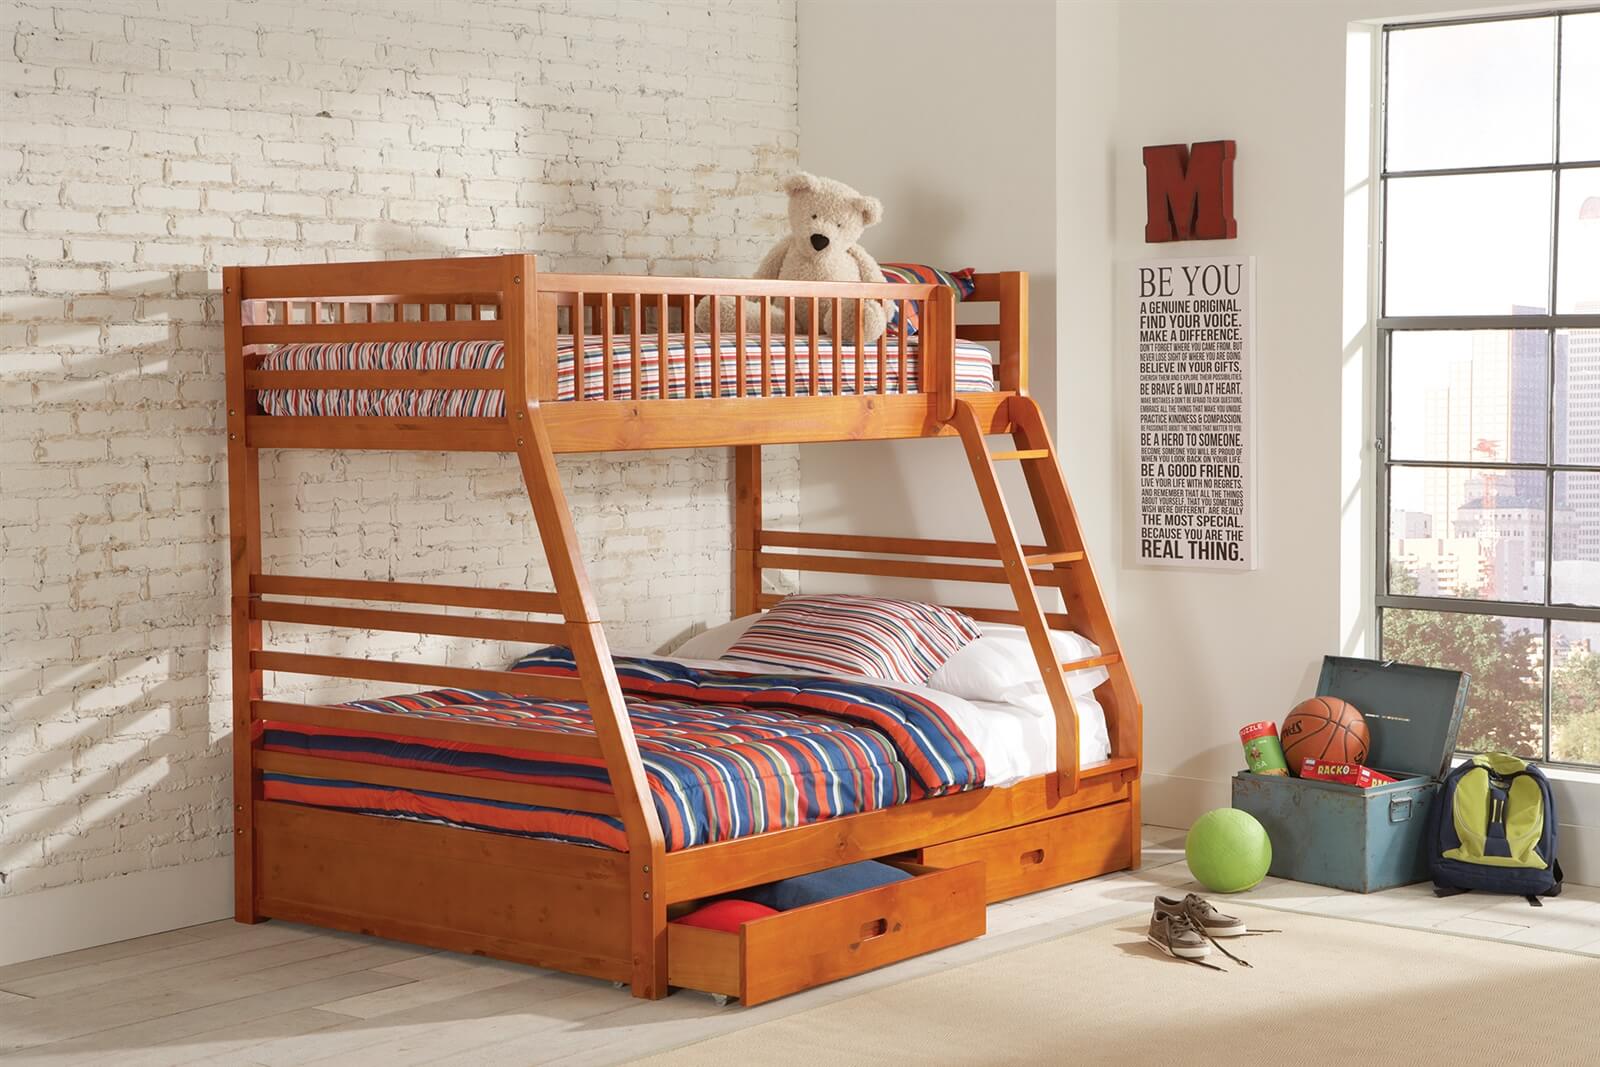 Có vô vàn thiết kế giường tầng được làm từ gỗ